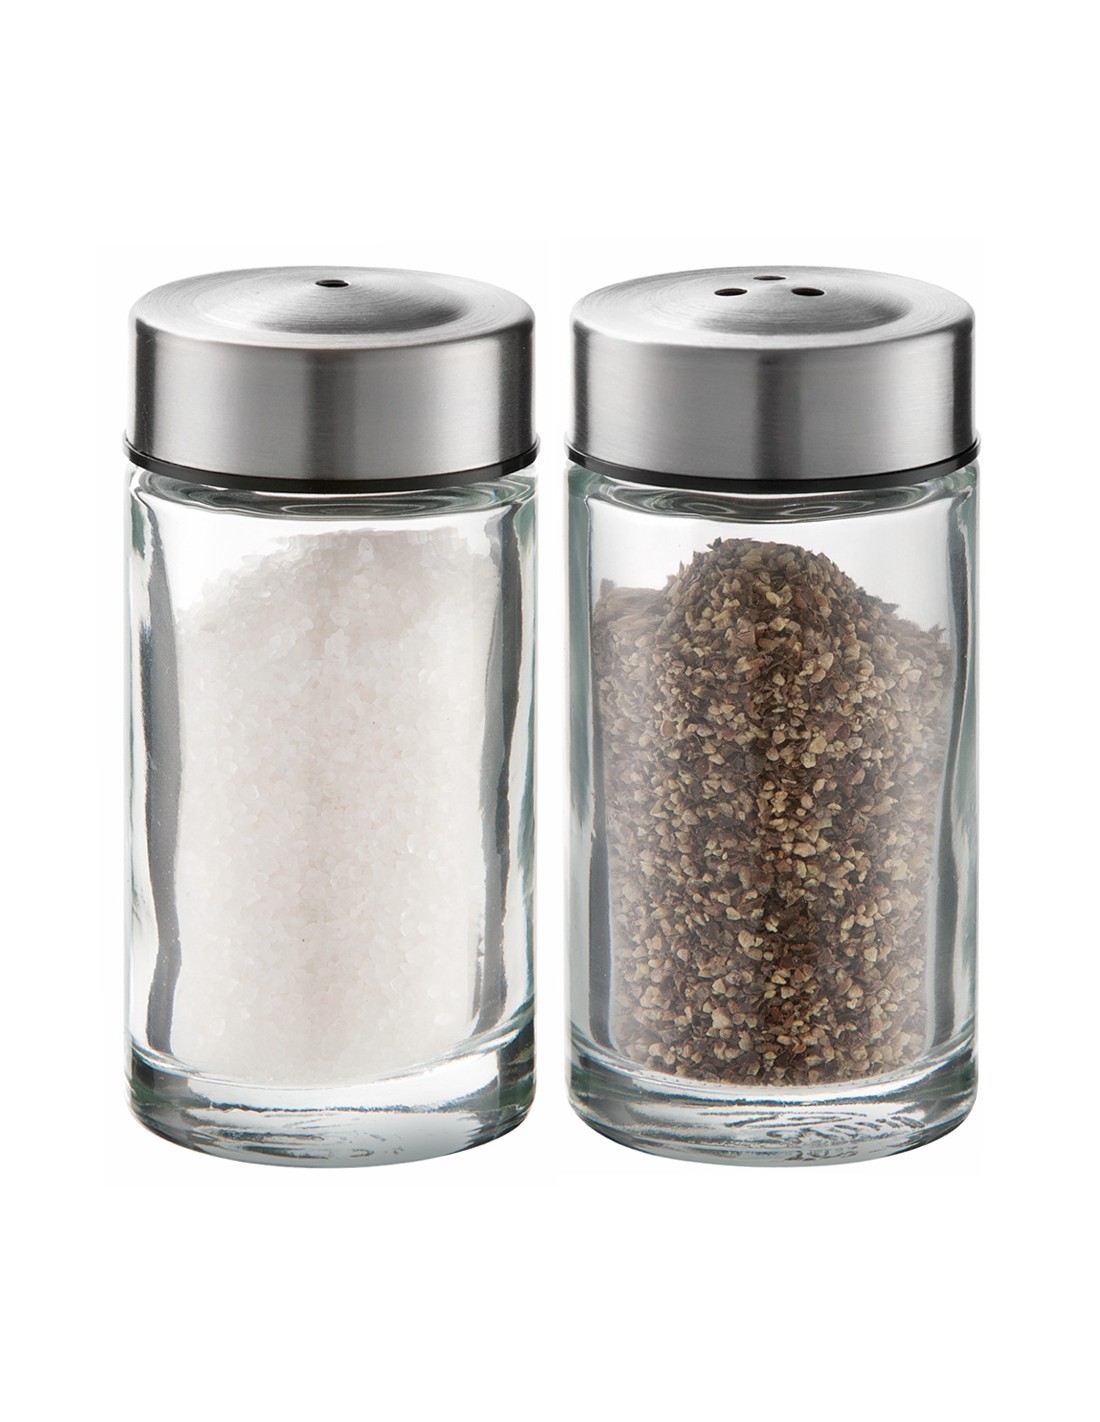 Salt & pepper set